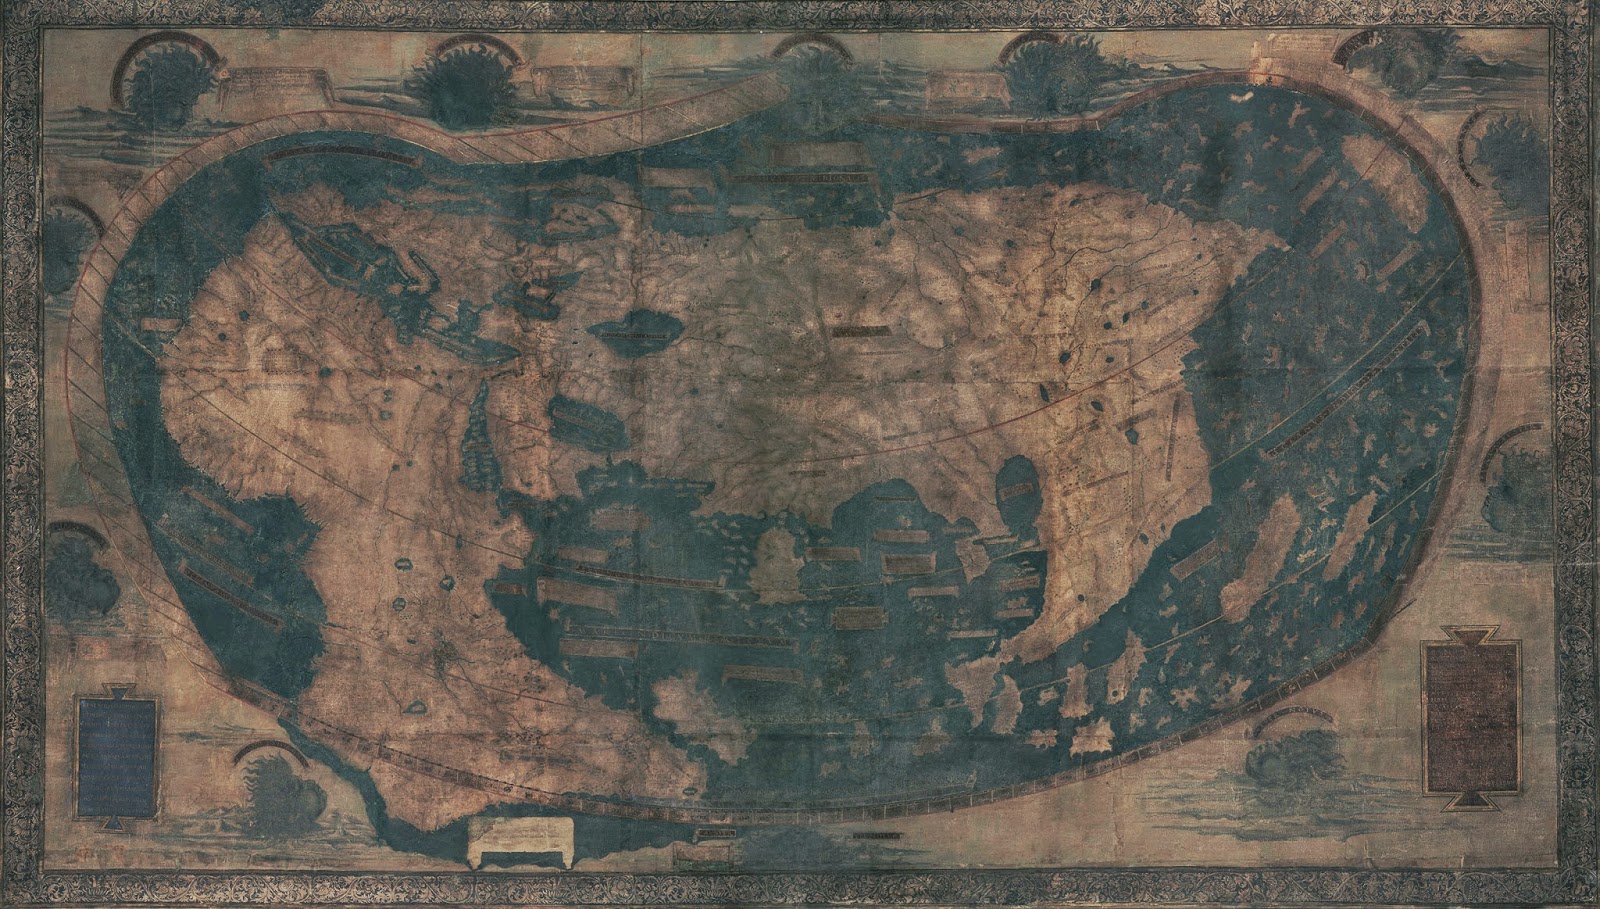 Mapa del dia: Mapa de Martellous de 1491